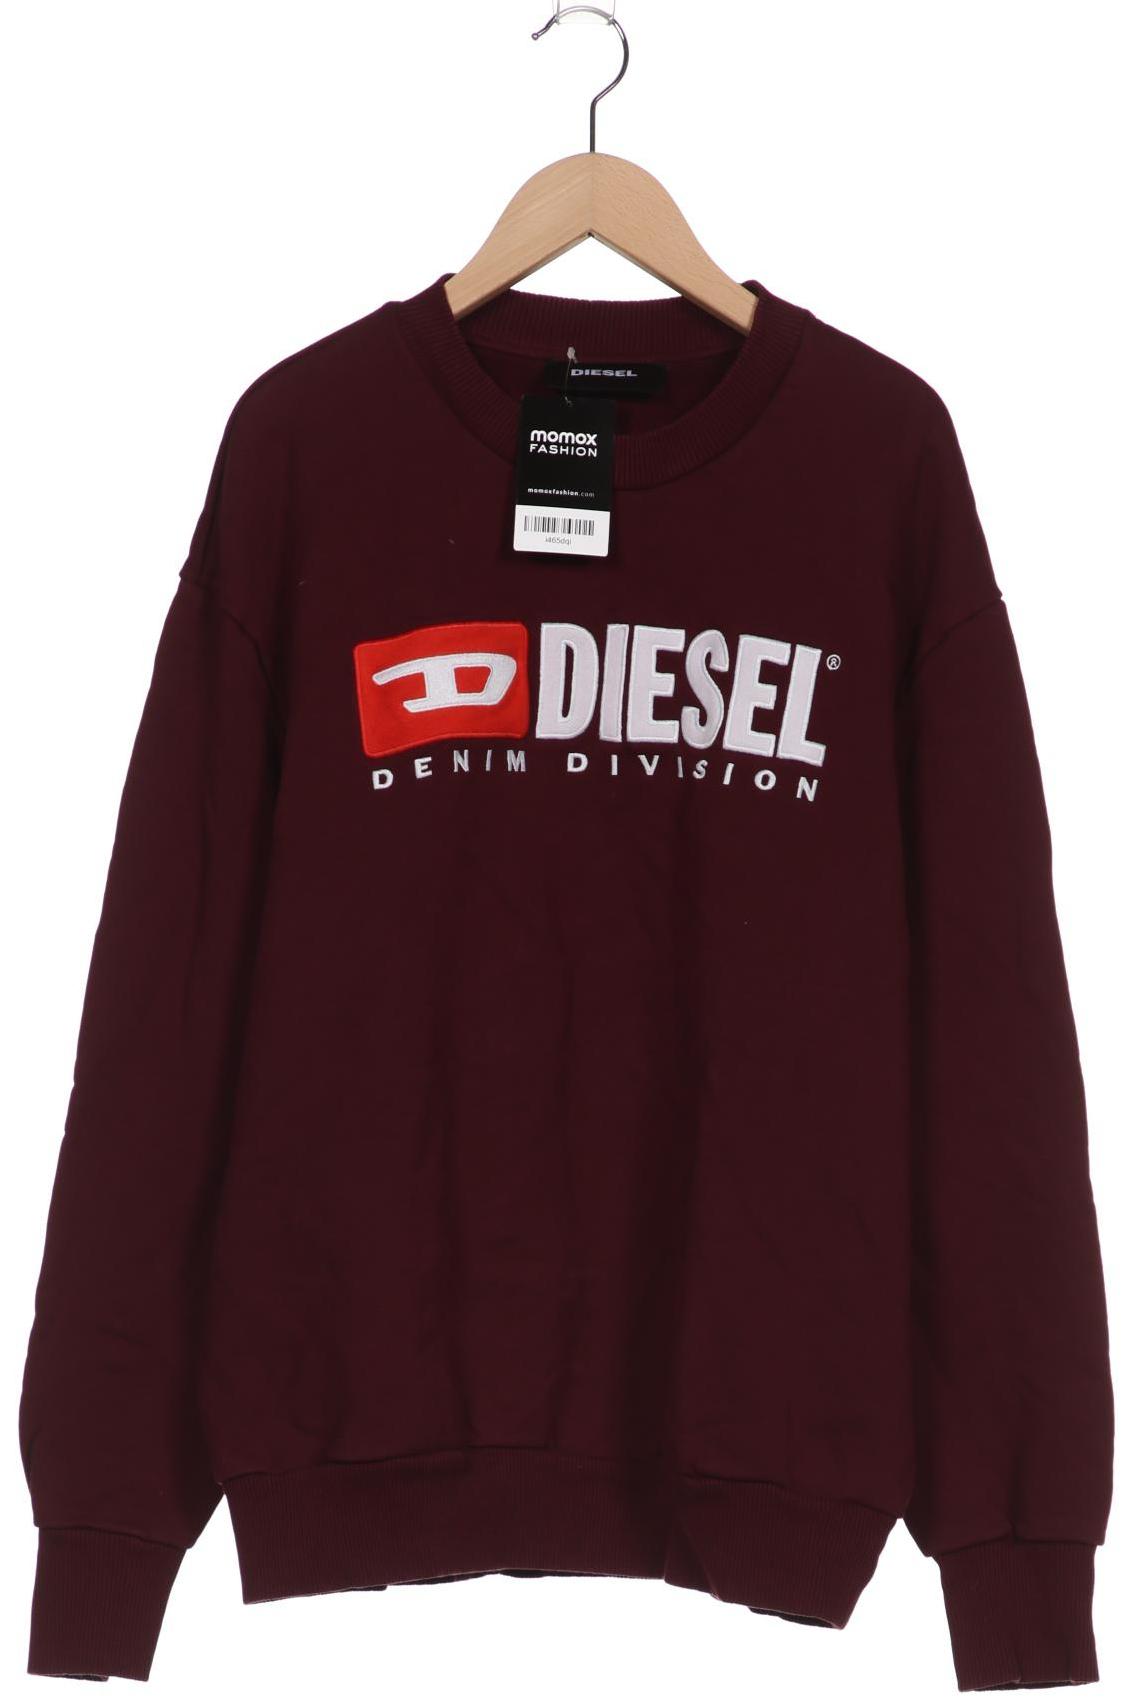 Diesel Herren Sweatshirt, bordeaux von Diesel